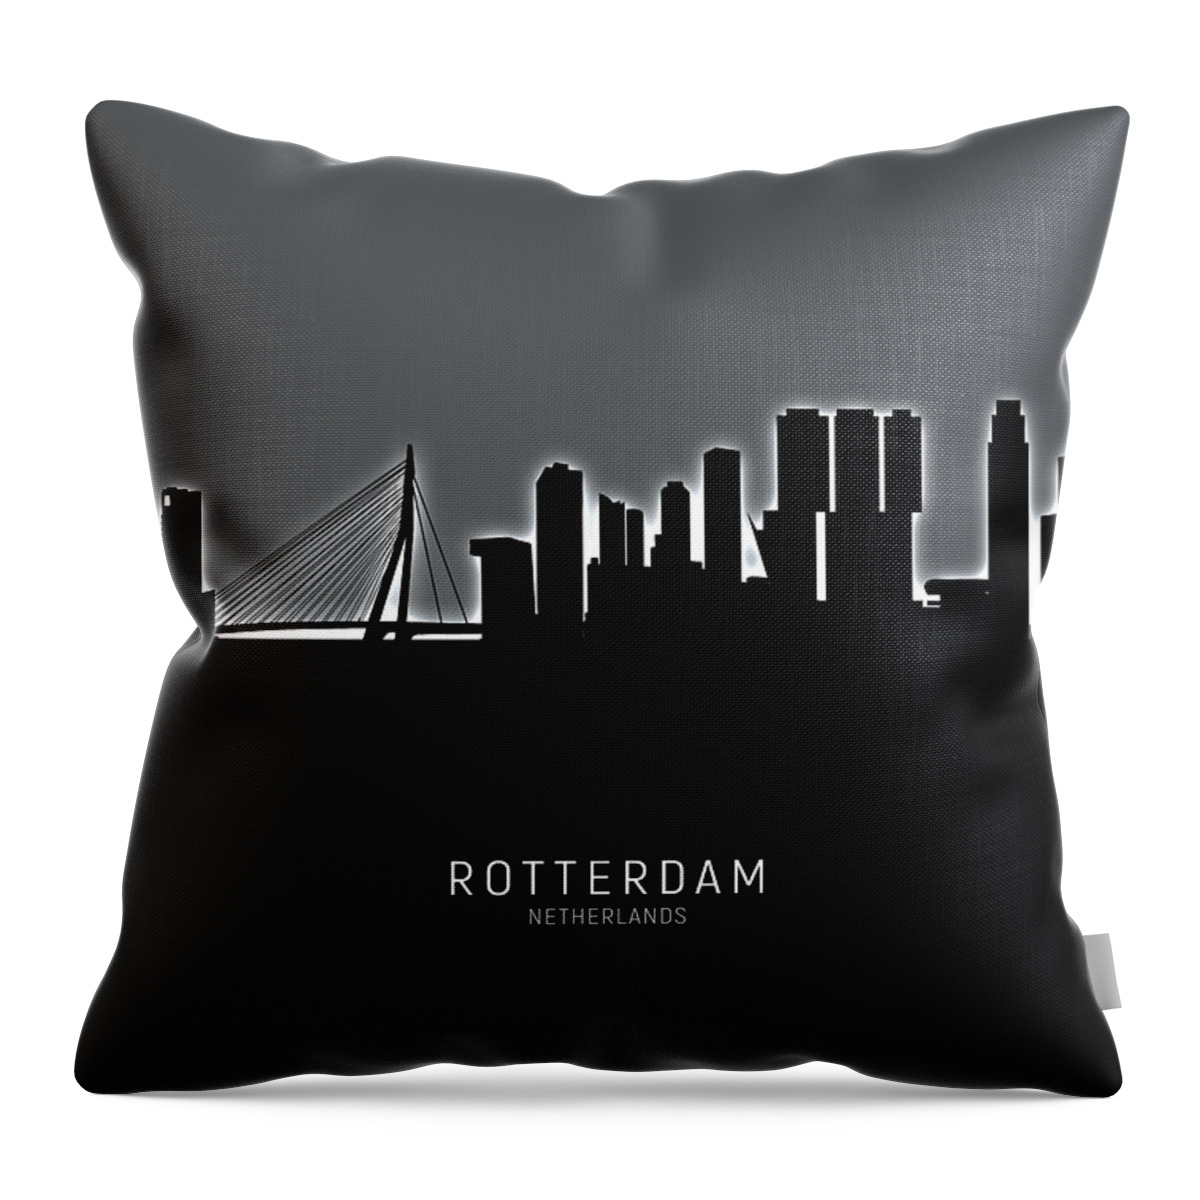 Rotterdam Throw Pillow featuring the digital art Rotterdam The Netherlands Skyline #18 by Michael Tompsett